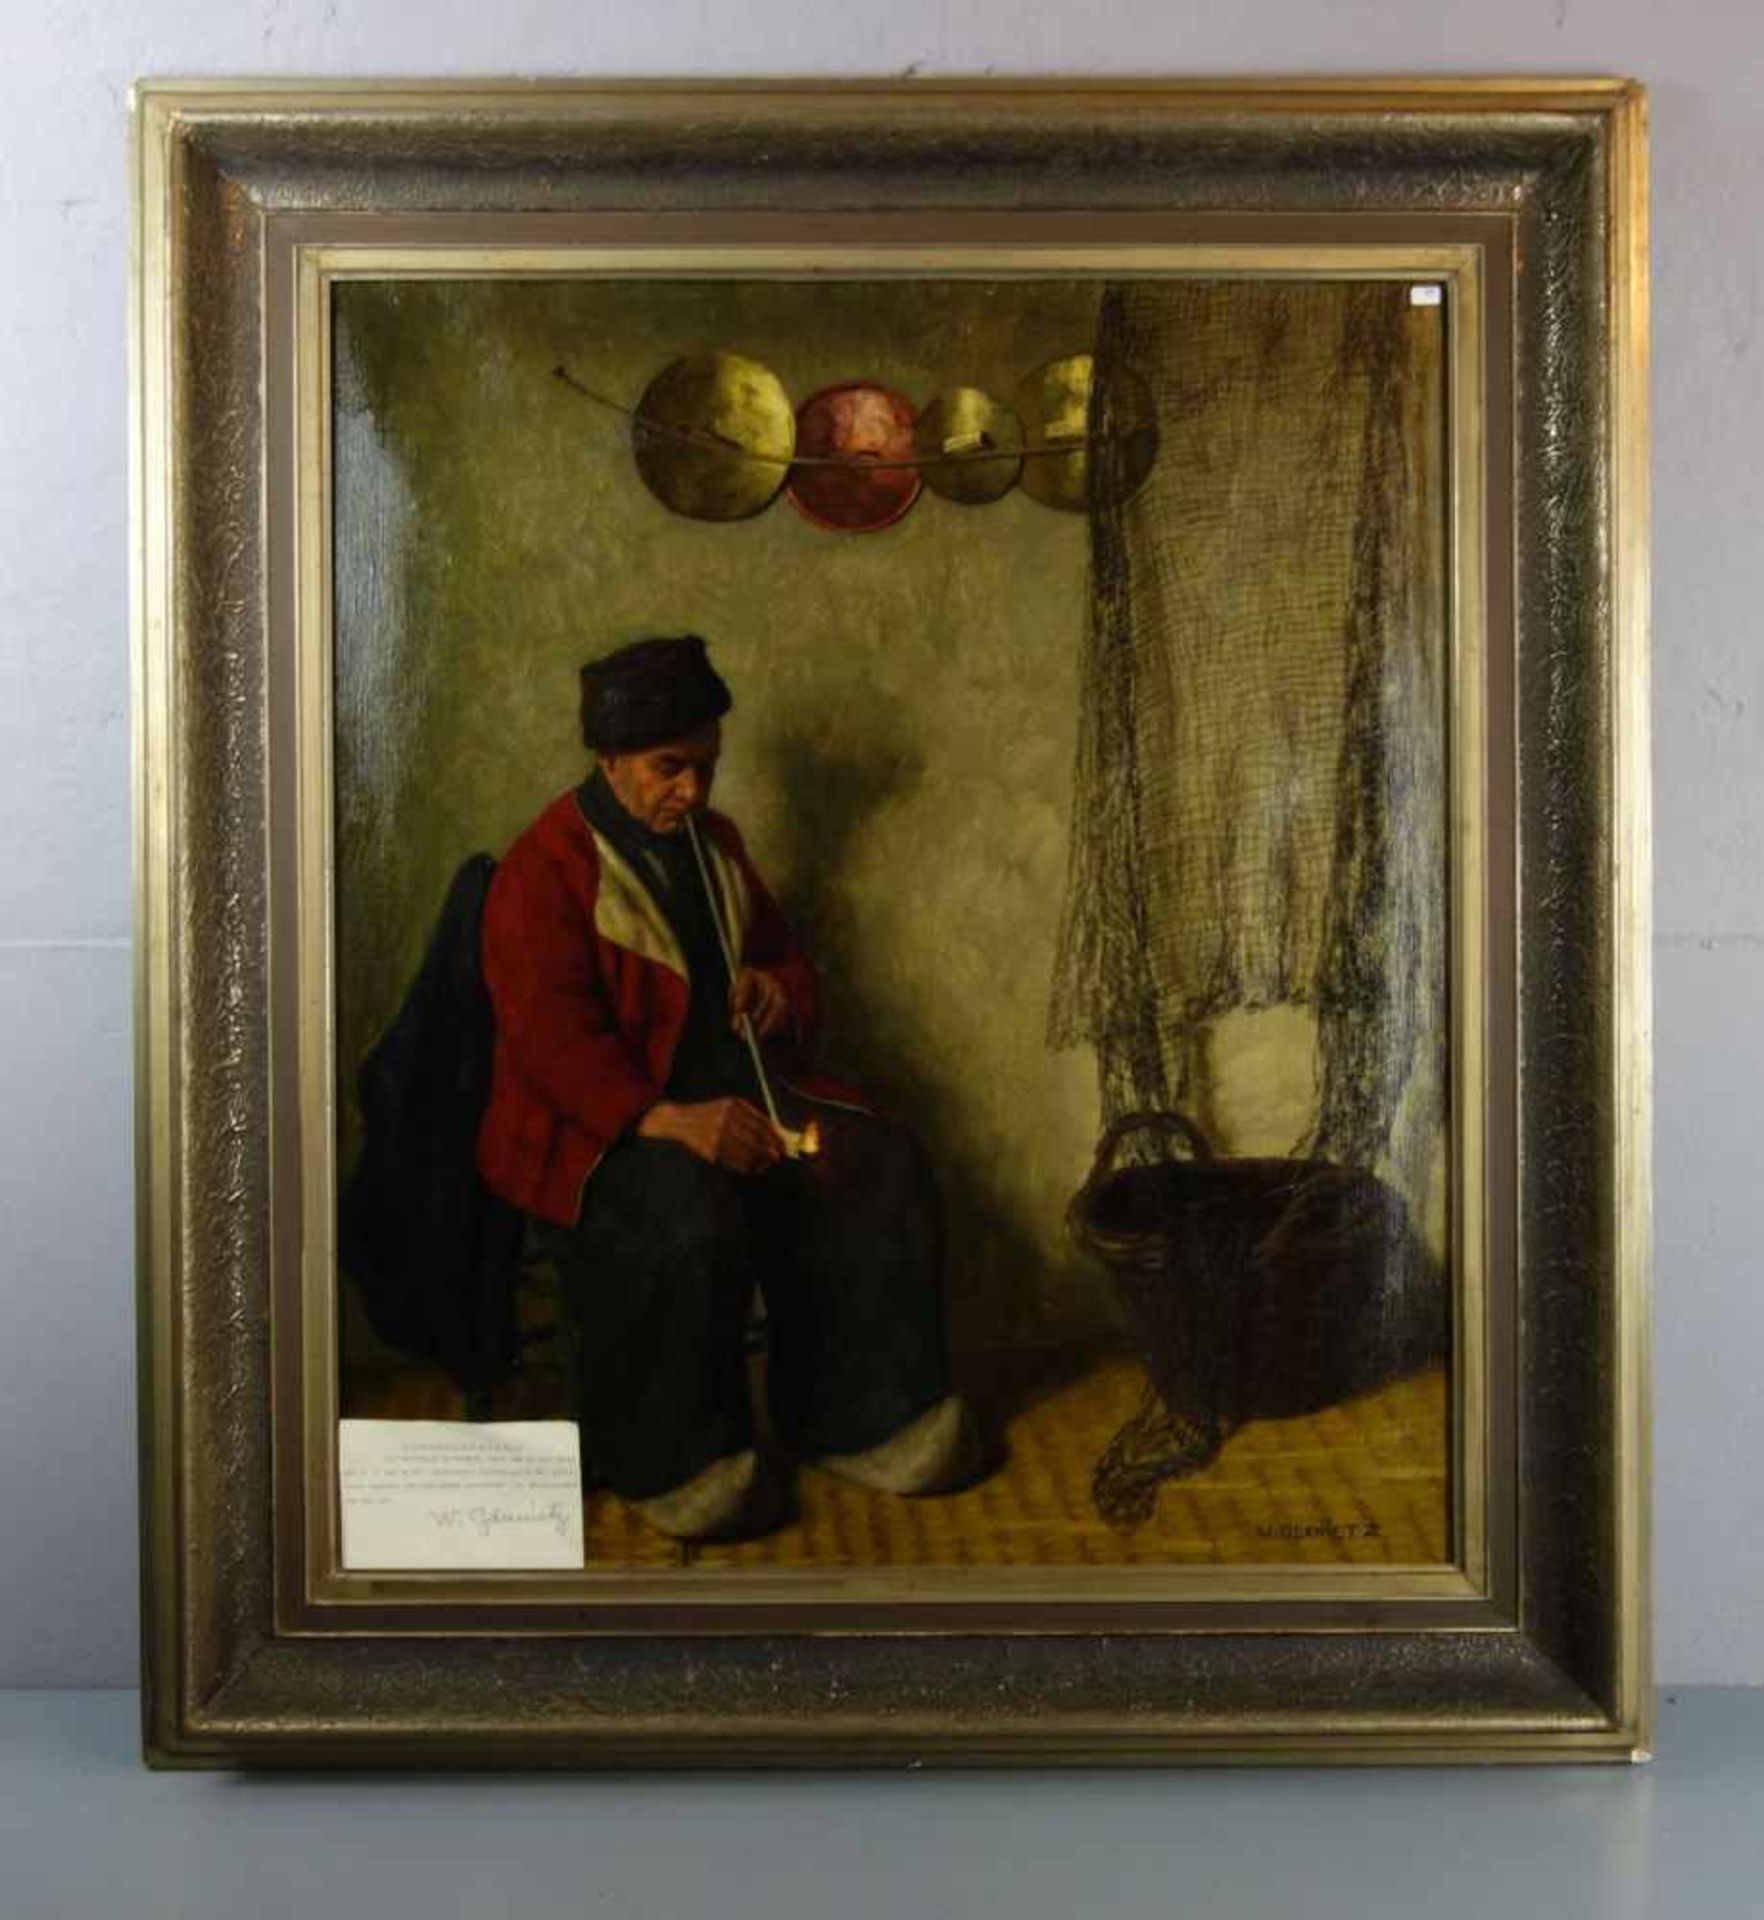 GDANIETZ, WILHELM (Mainz 1893-1962 Düsseldorf), Gemälde / painting: "Friesisches Interieur" / "